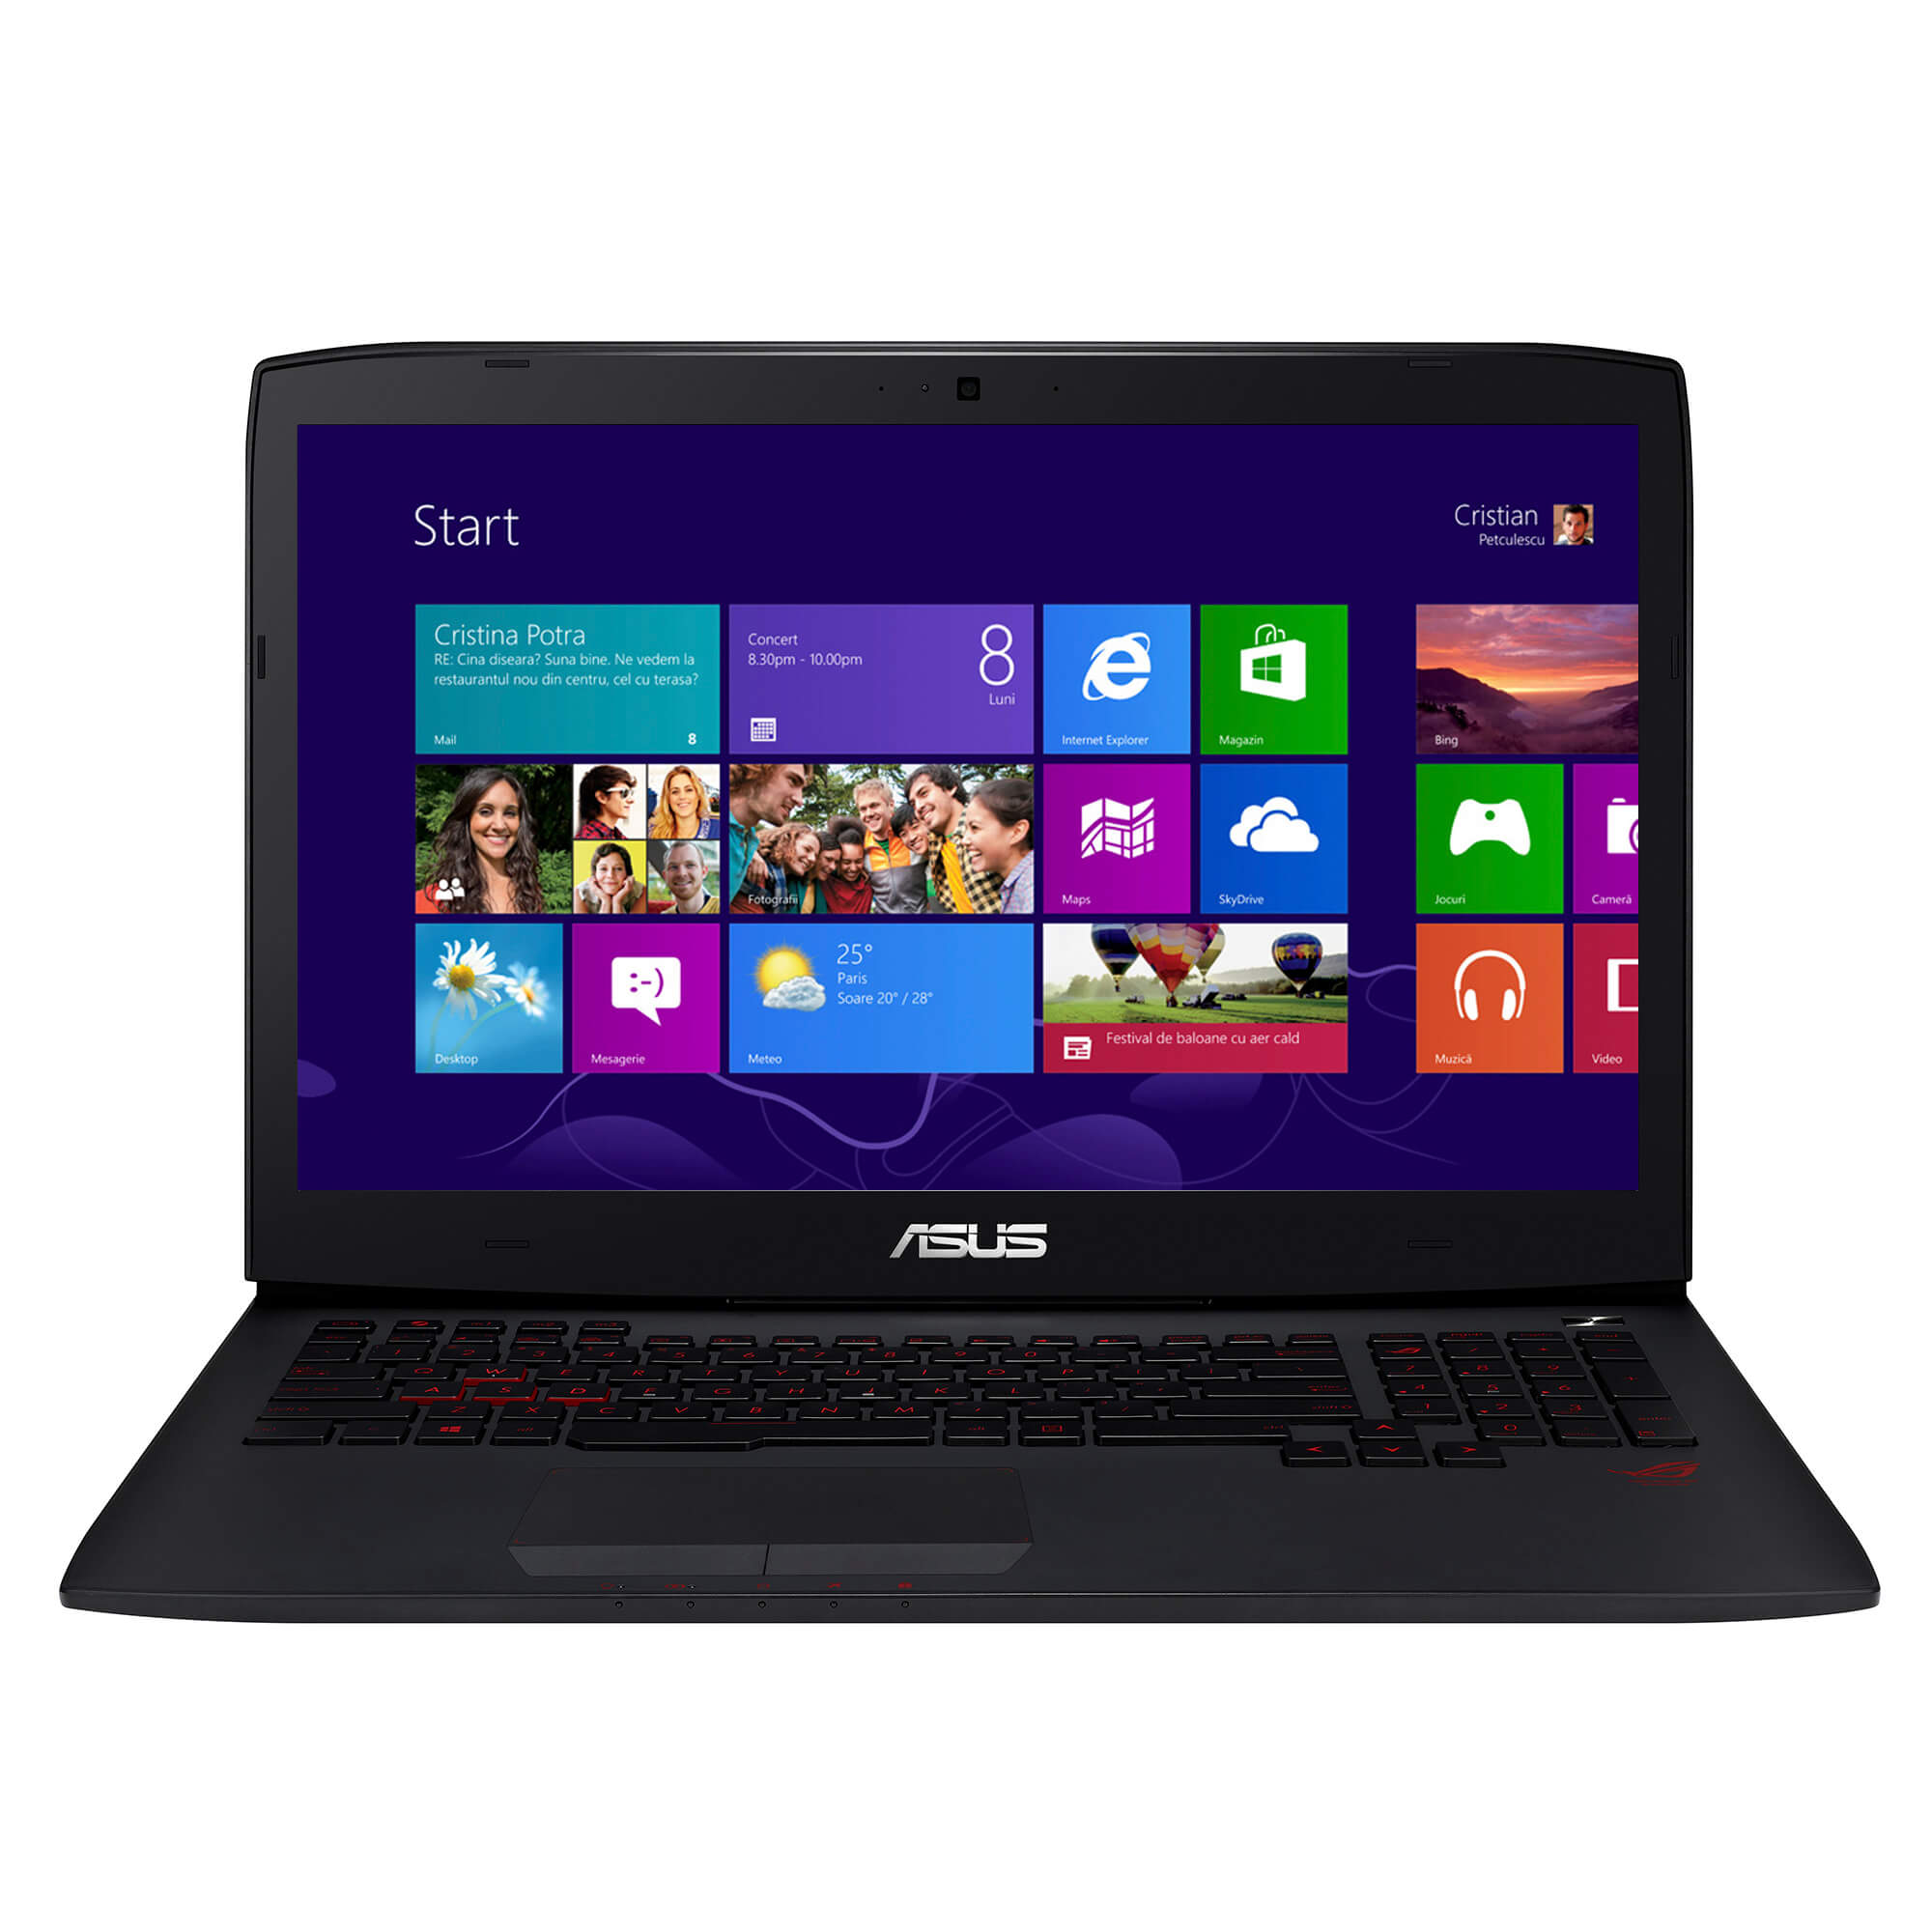  Laptop Asus G751JM-T3044H, Intel Core i7-4710HQ, 24GB DDR3, HDD 2TB + 256GB SSD, nVidia GeForce GTX 860M 2GB, Windows 8 